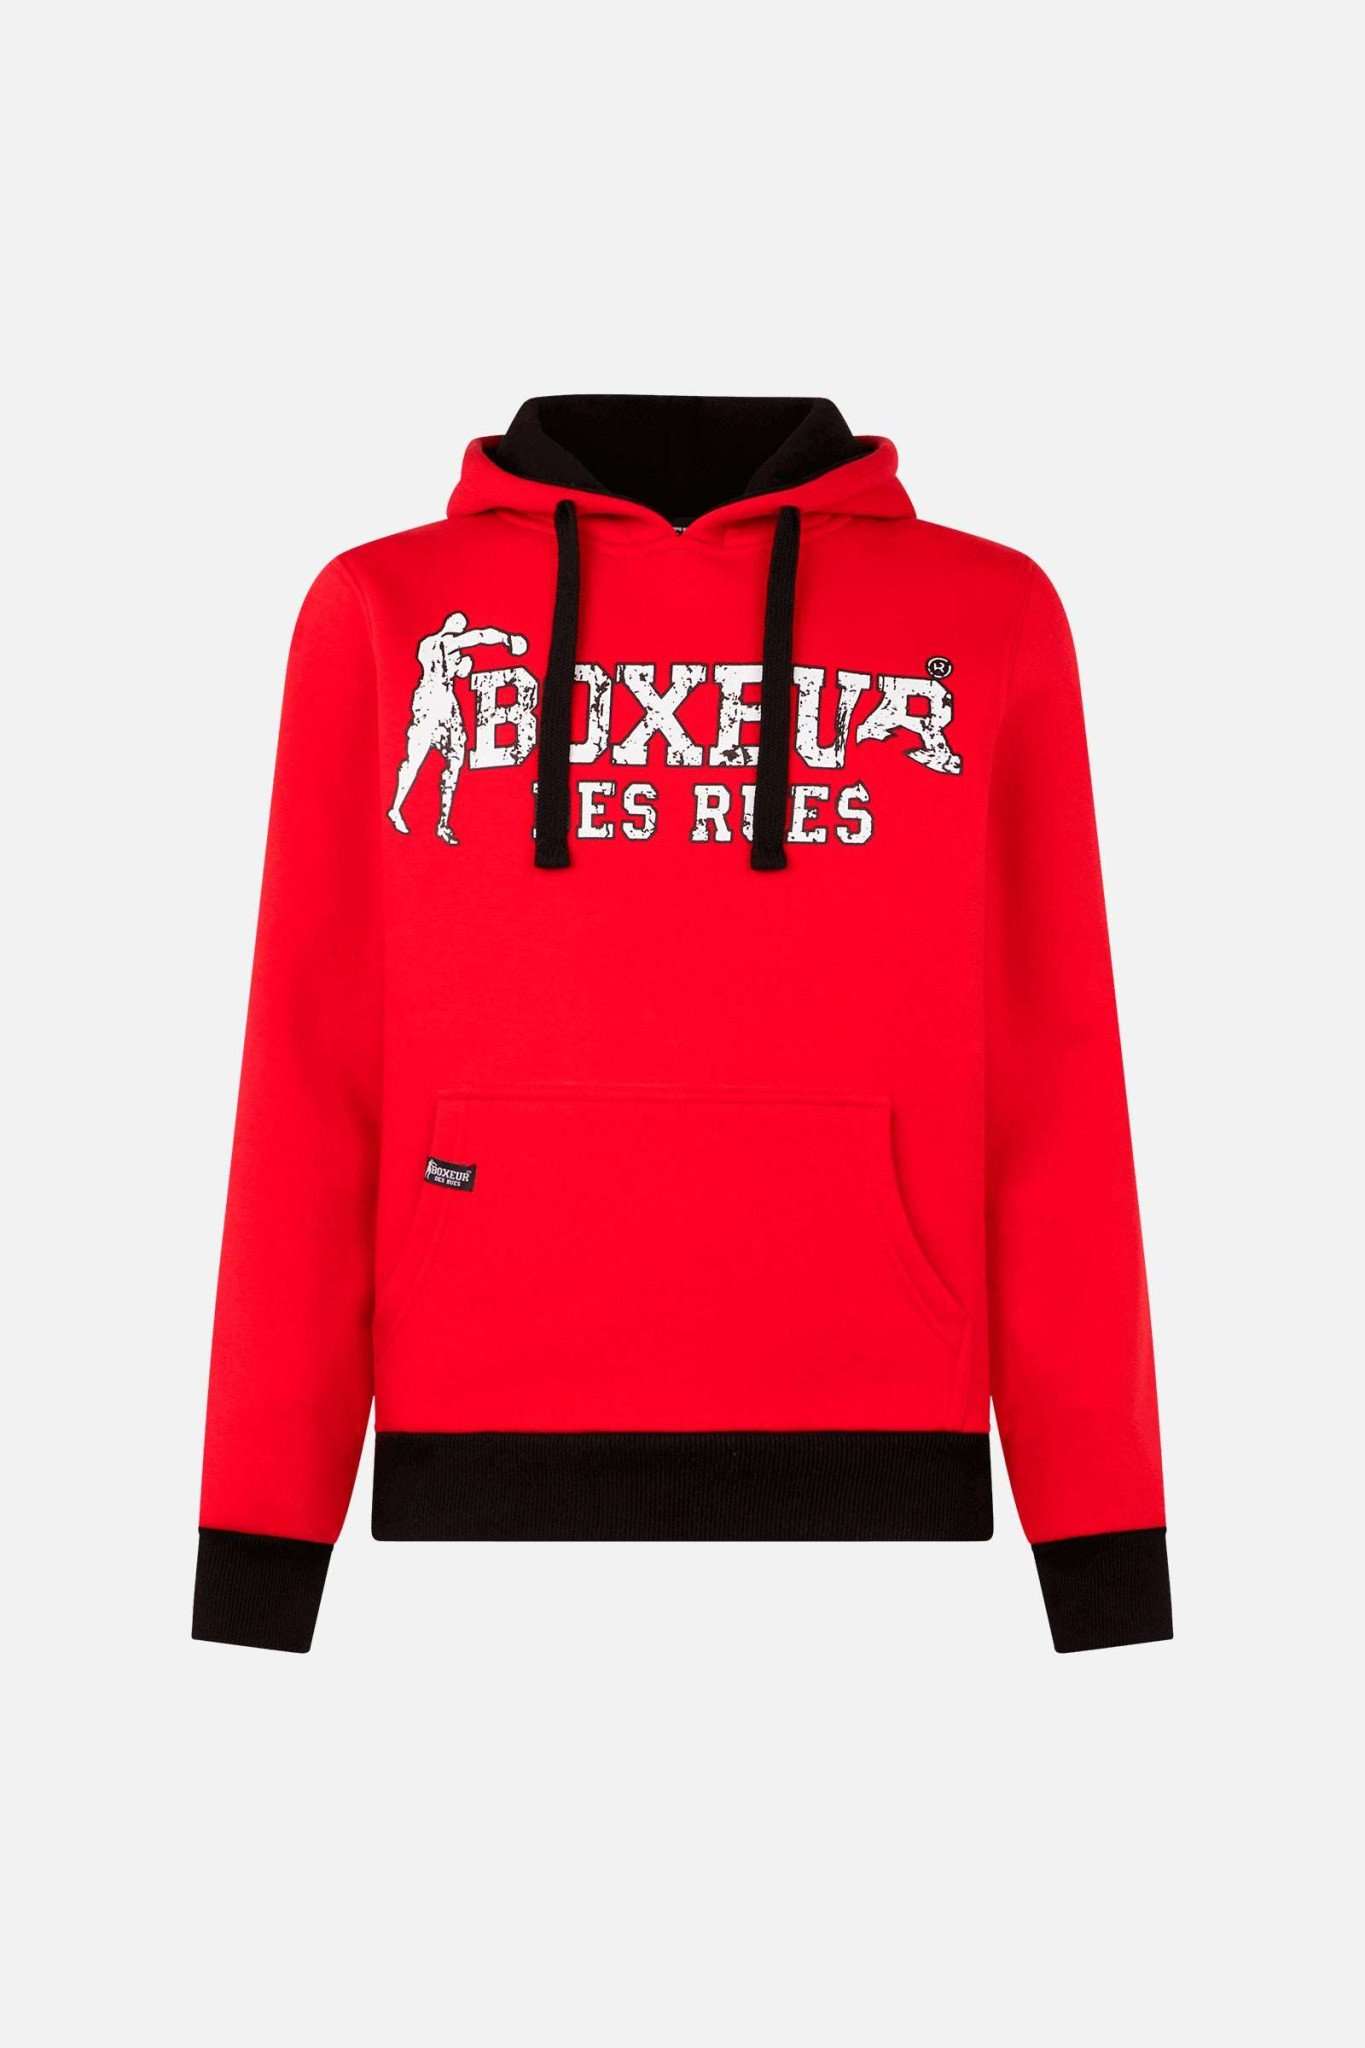 Man Hoodie Sweatshirt in Red Kapuzenpullover Boxeur des Rues   